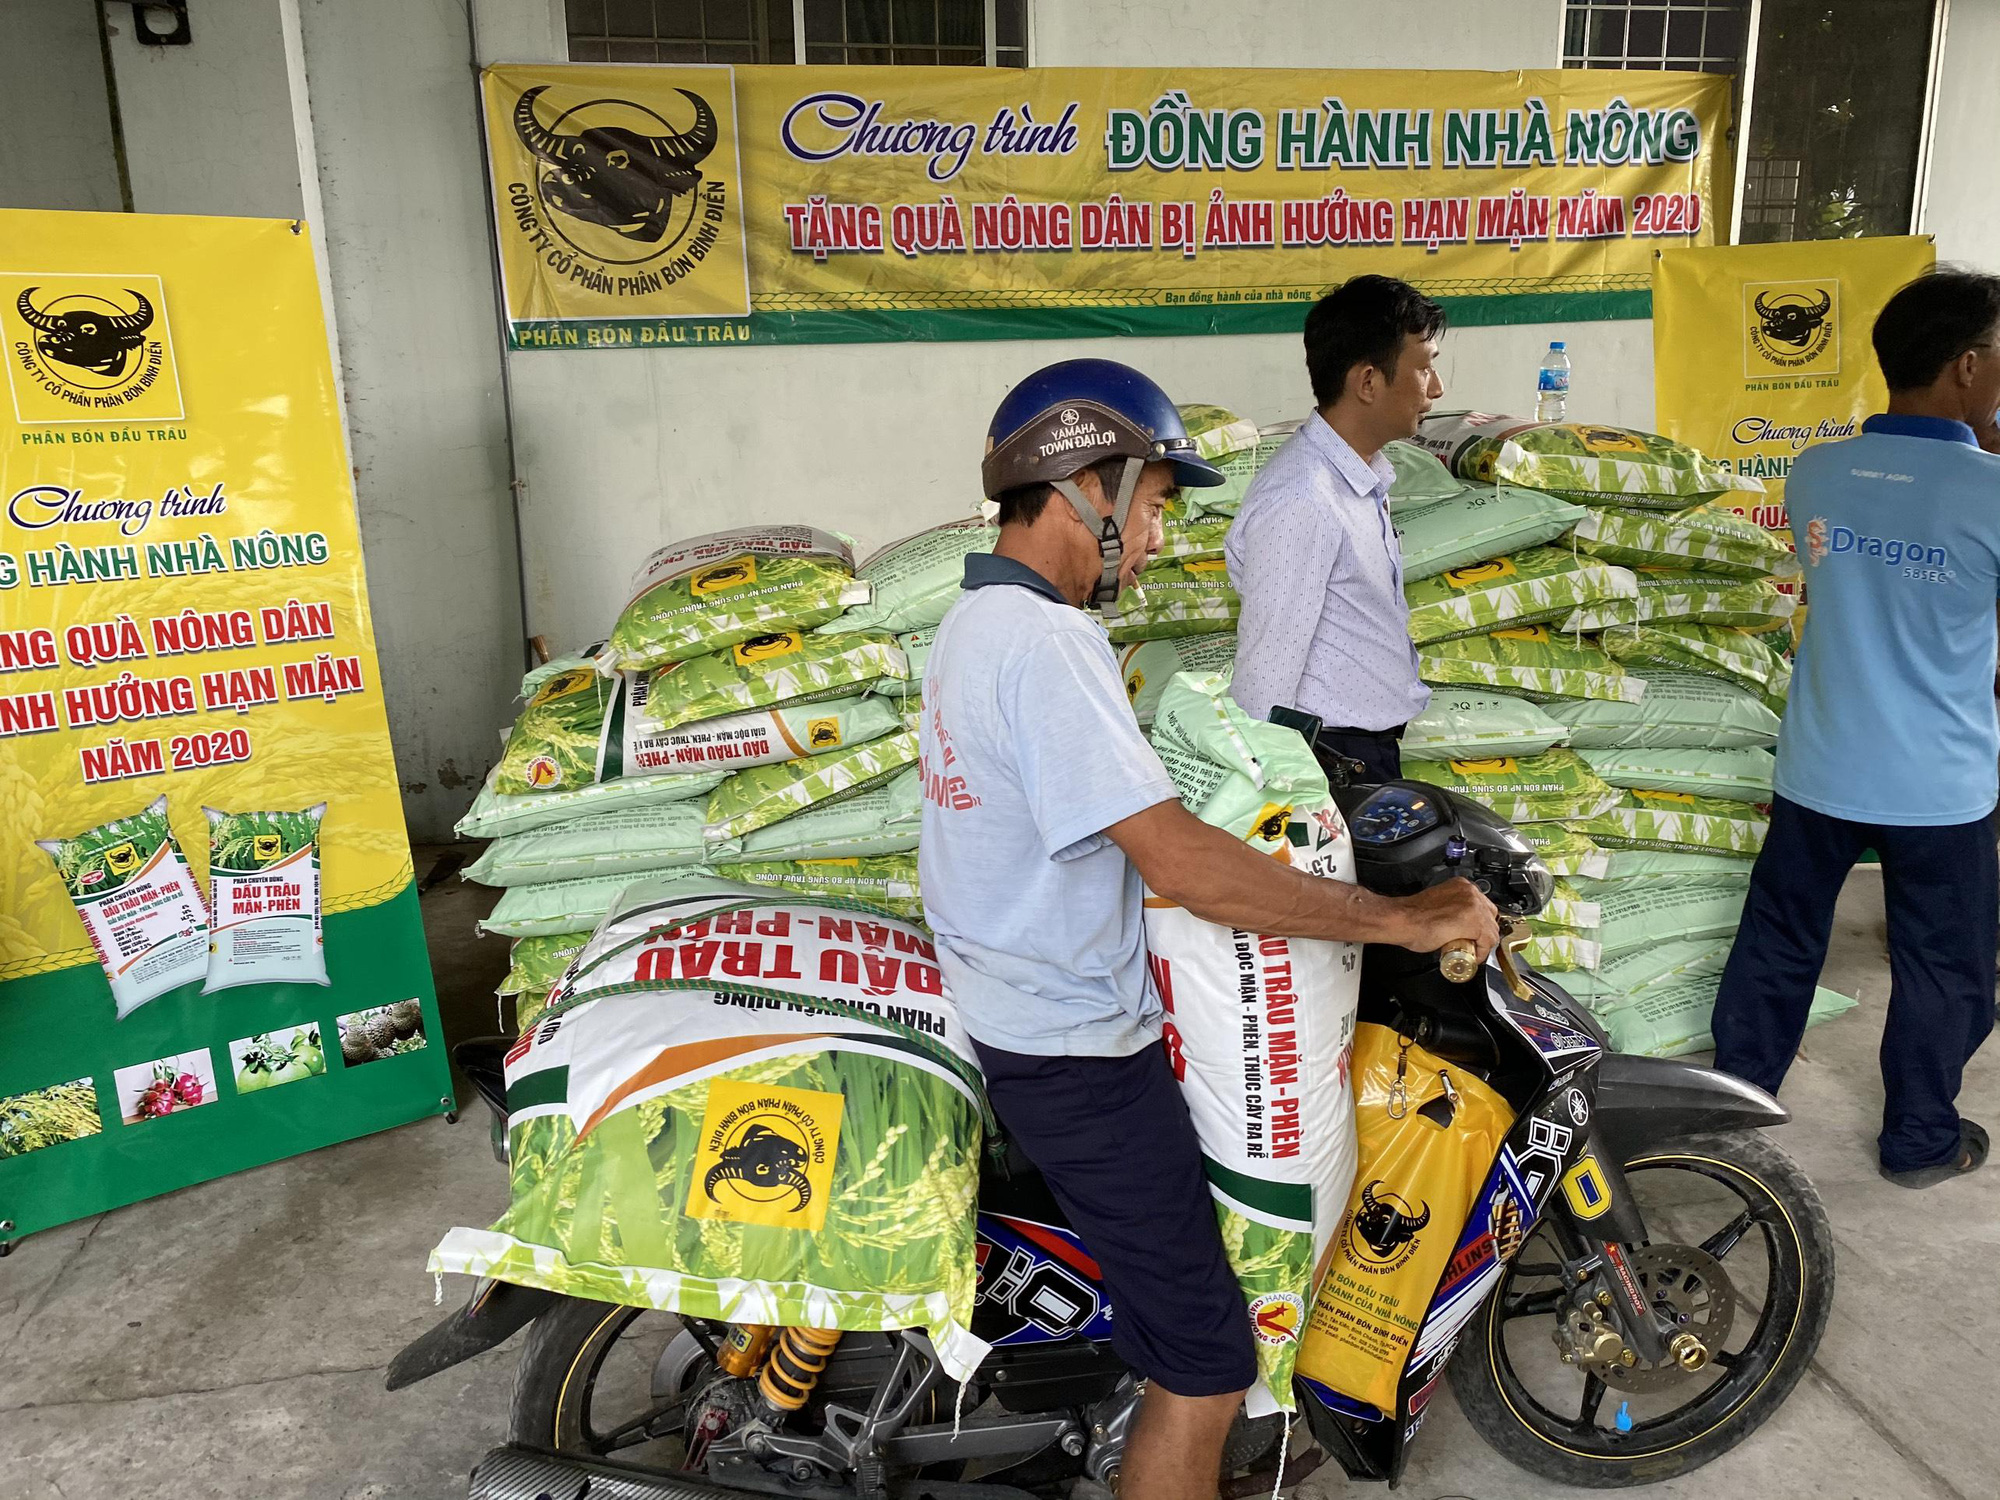 Phân bón Bình Điền hỗ trợ nông dân ĐBSCL vượt qua hạn mặn - Ảnh 1.